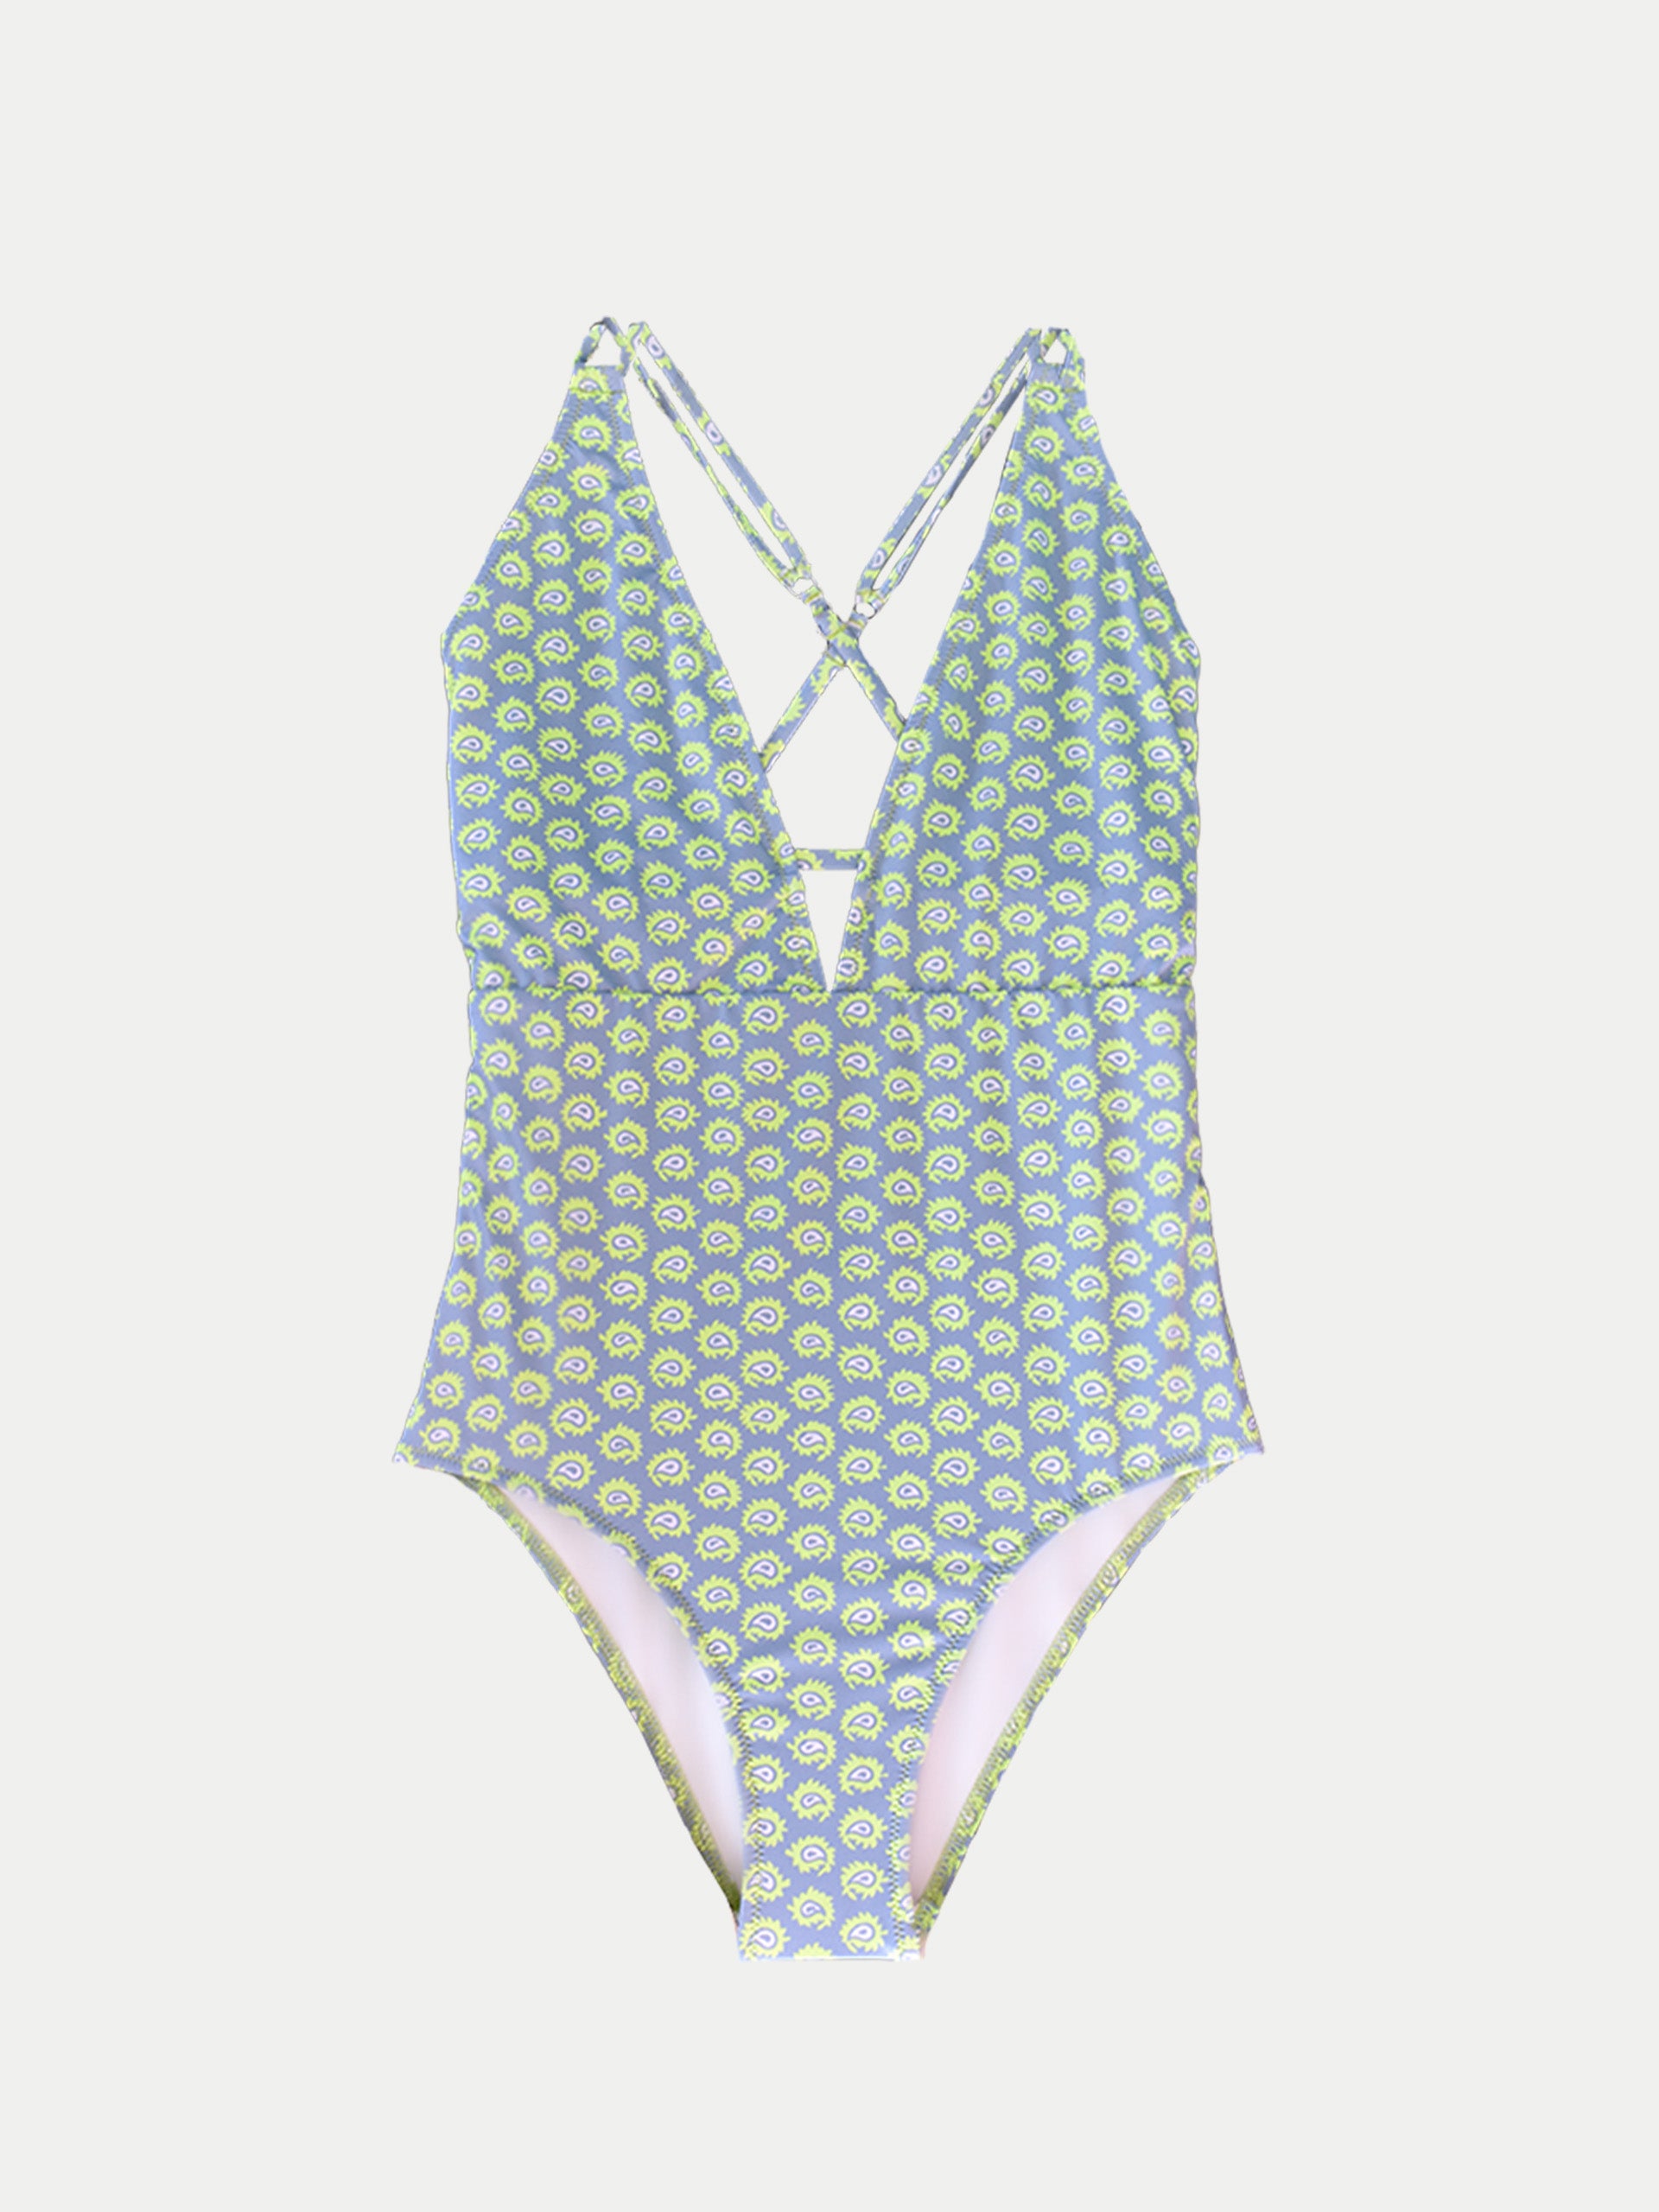 ‘Electric Green’ Women's Swimwear OP by 98 Coast Av.